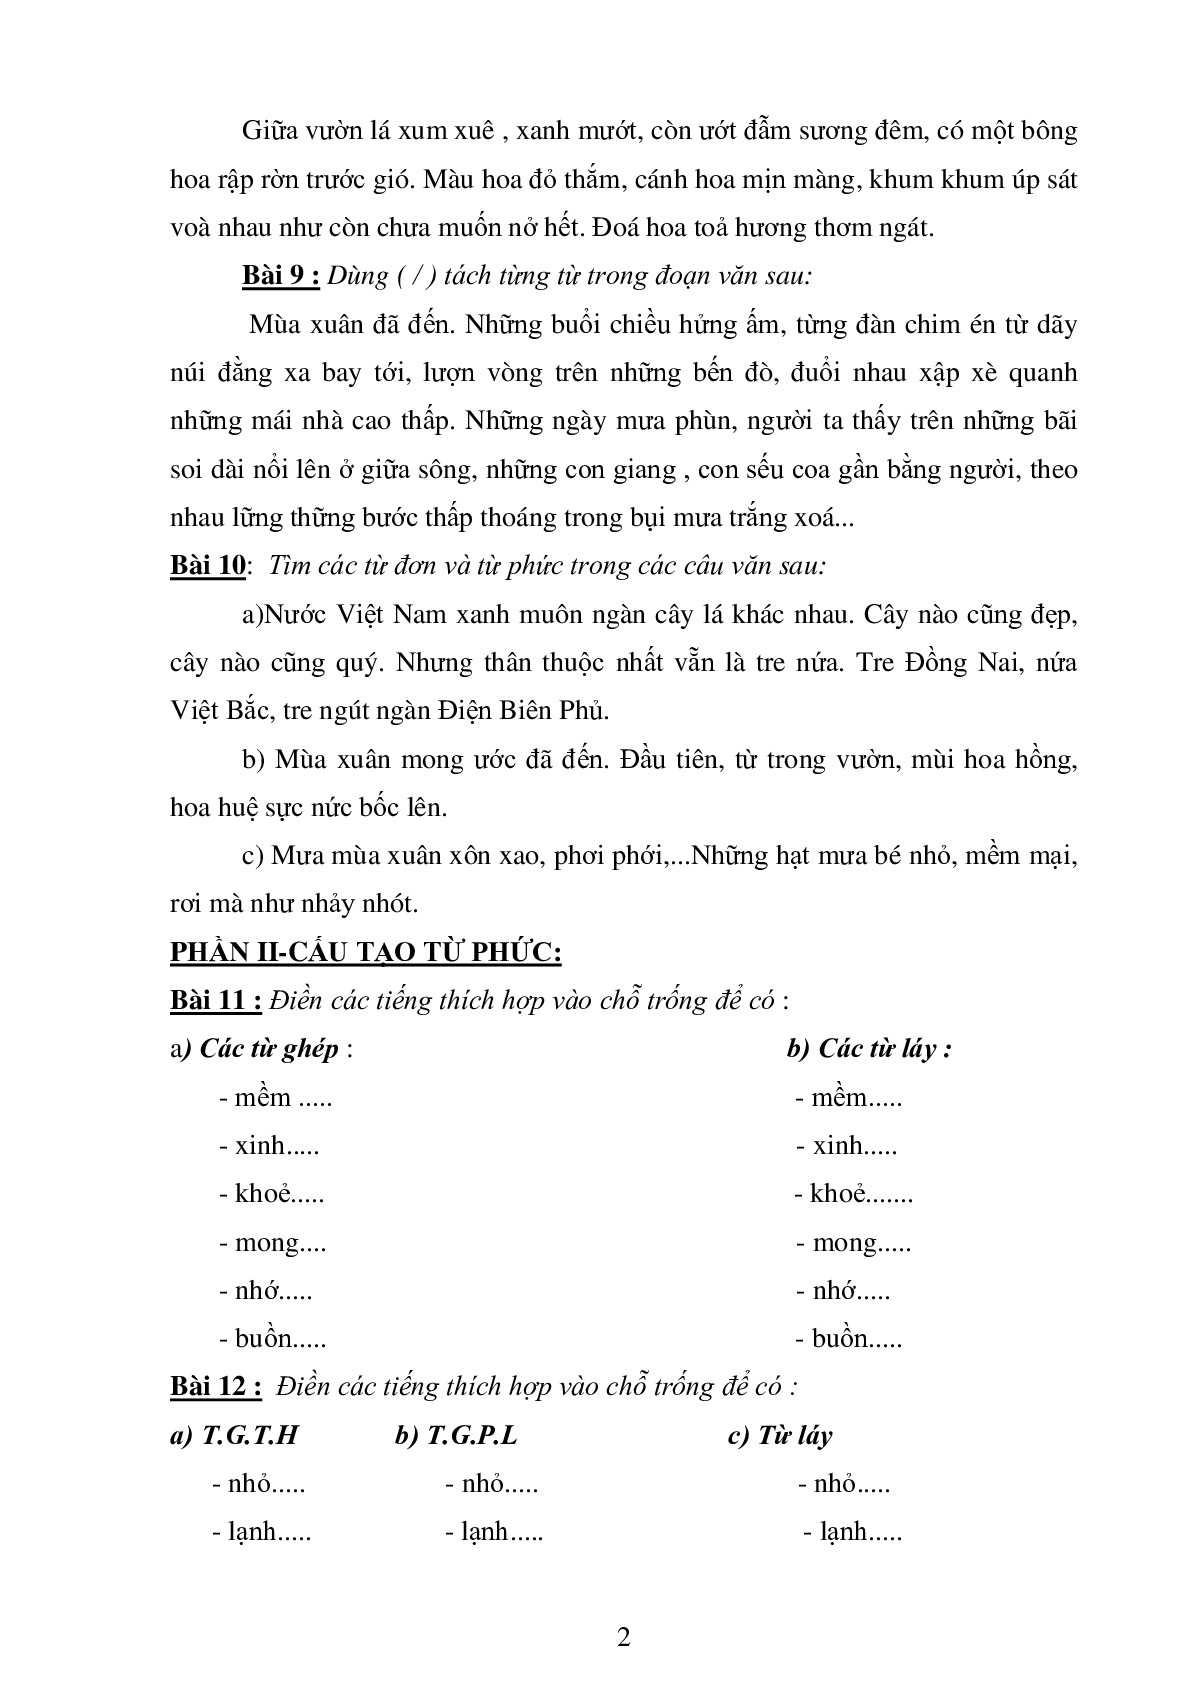 74 bài tập luyện từ và câu môn Tiếng Việt lớp 4 (trang 2)